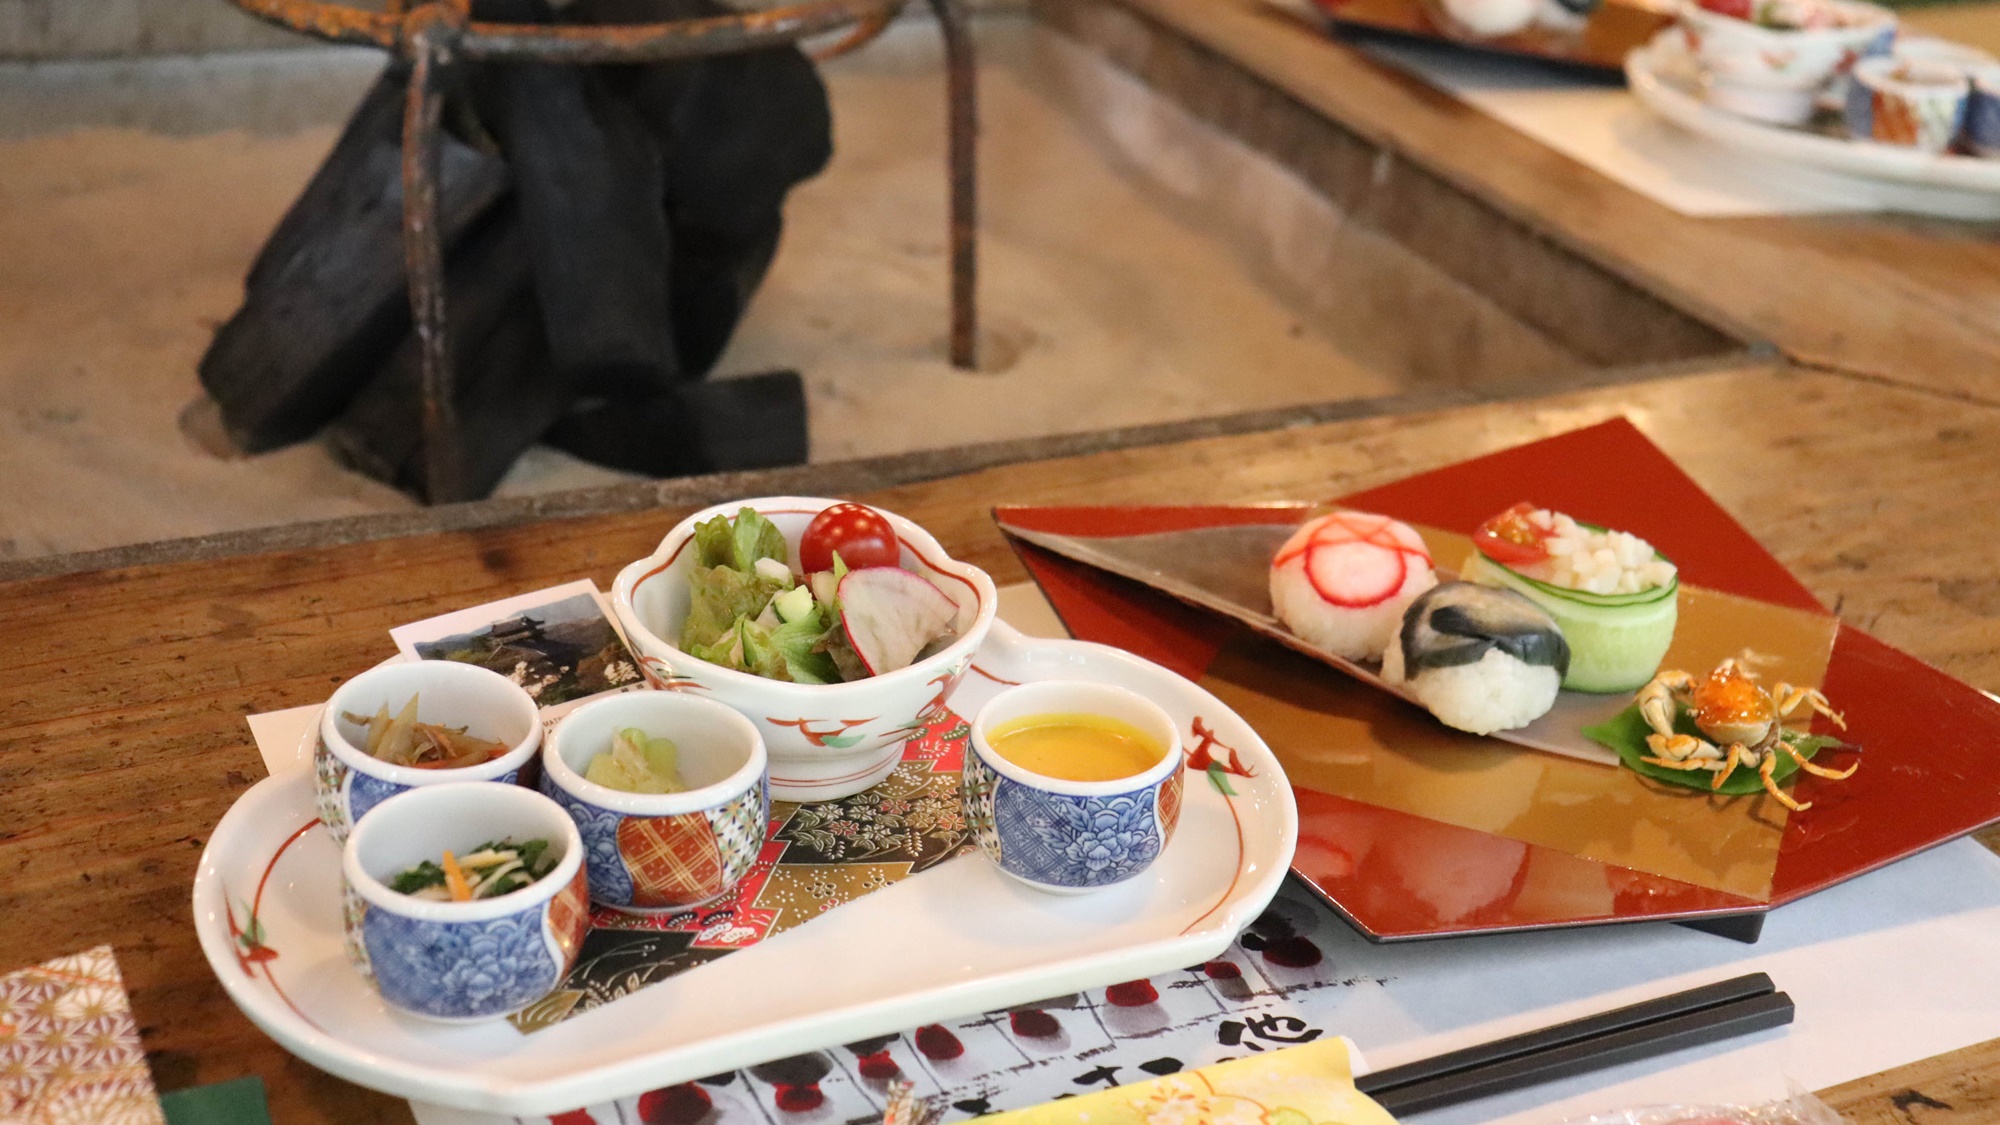 【囲炉裏スペシャルグルメ一例】有機野菜の手毬寿司